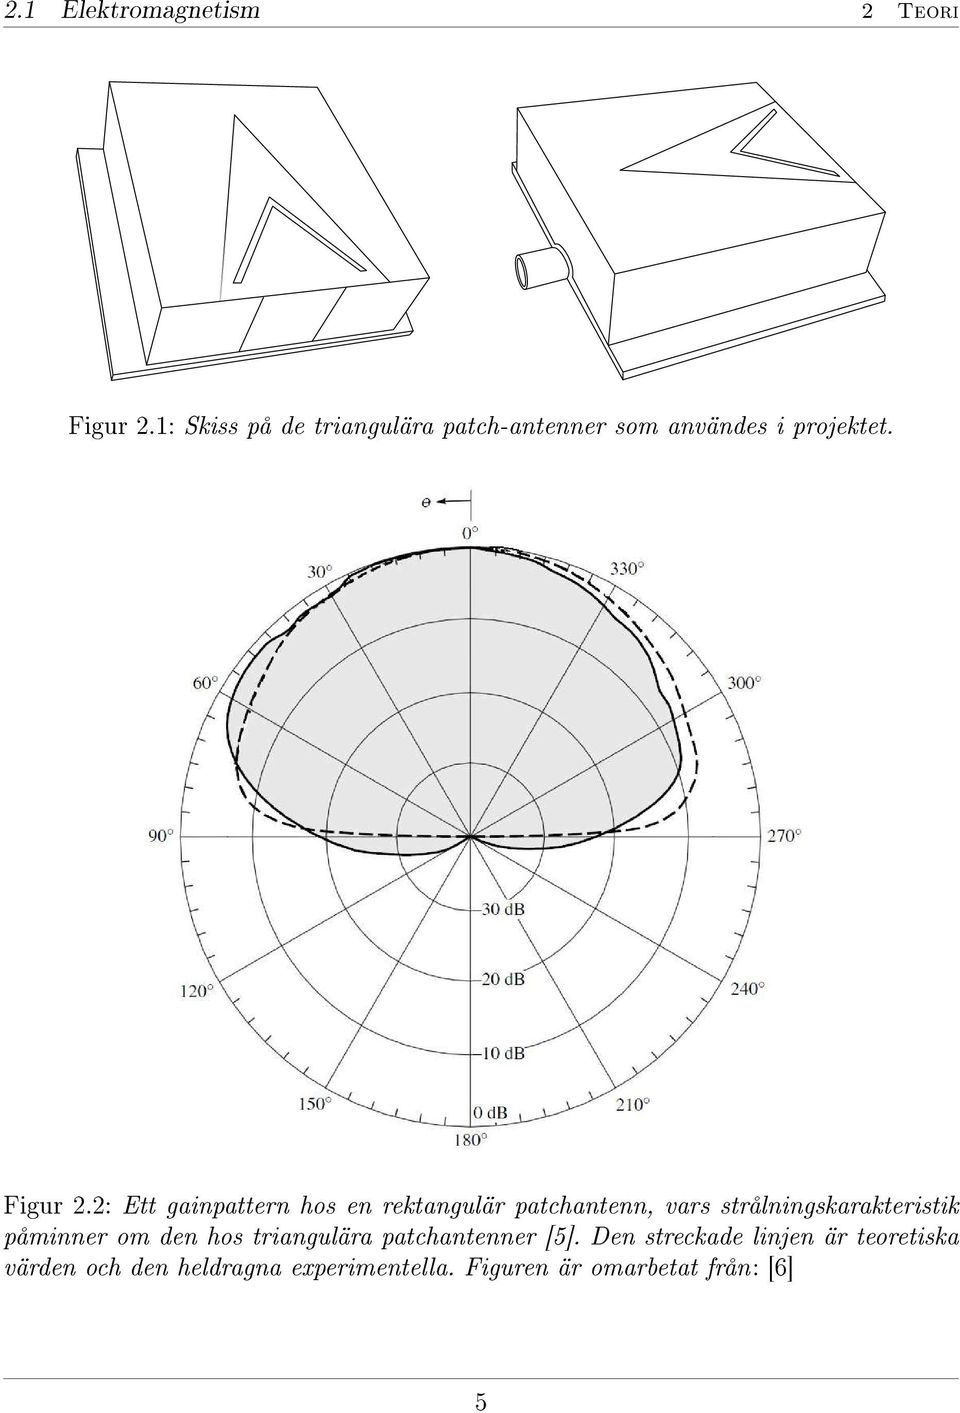 2: Ett gainpattern hos en rektangulär patchantenn, vars strålningskarakteristik